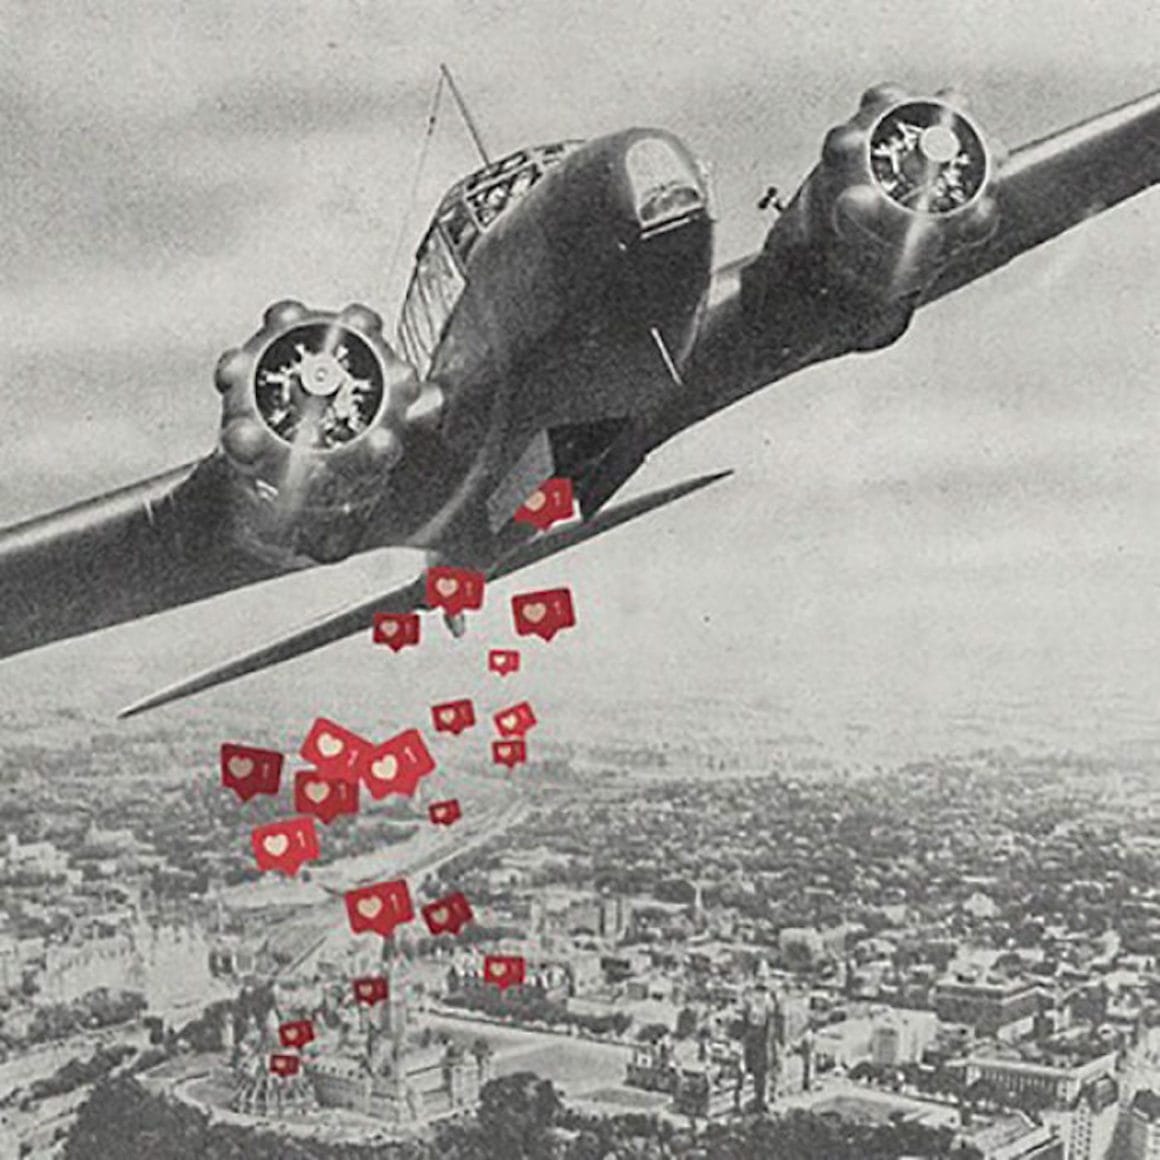 Un collage surprenant de Mohanad Shuraideh représentant un avion larguant des bombes de like Instagram